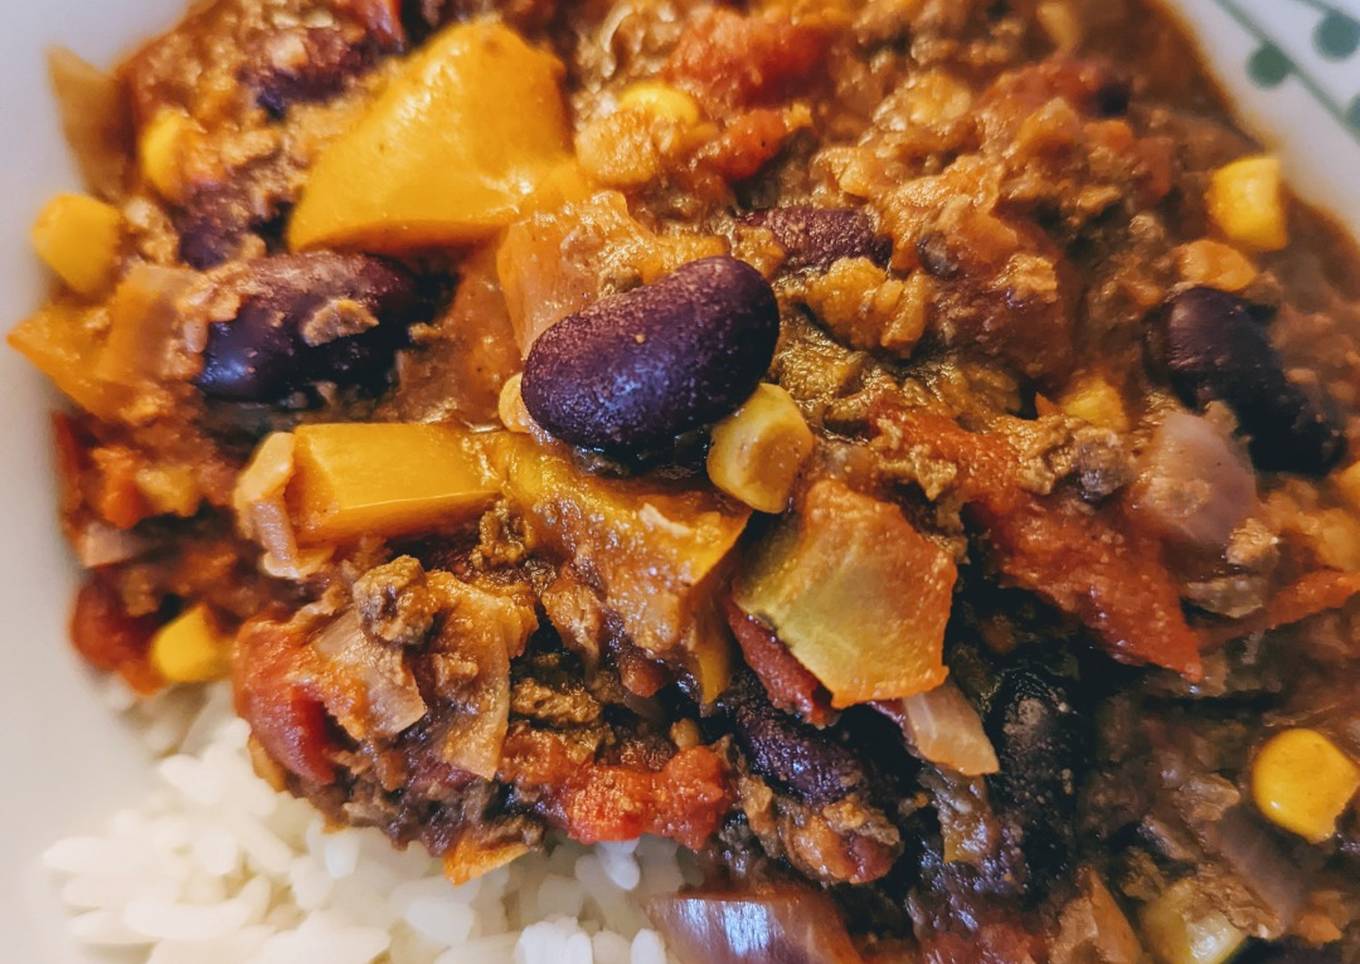 Vegan chilli with lentils